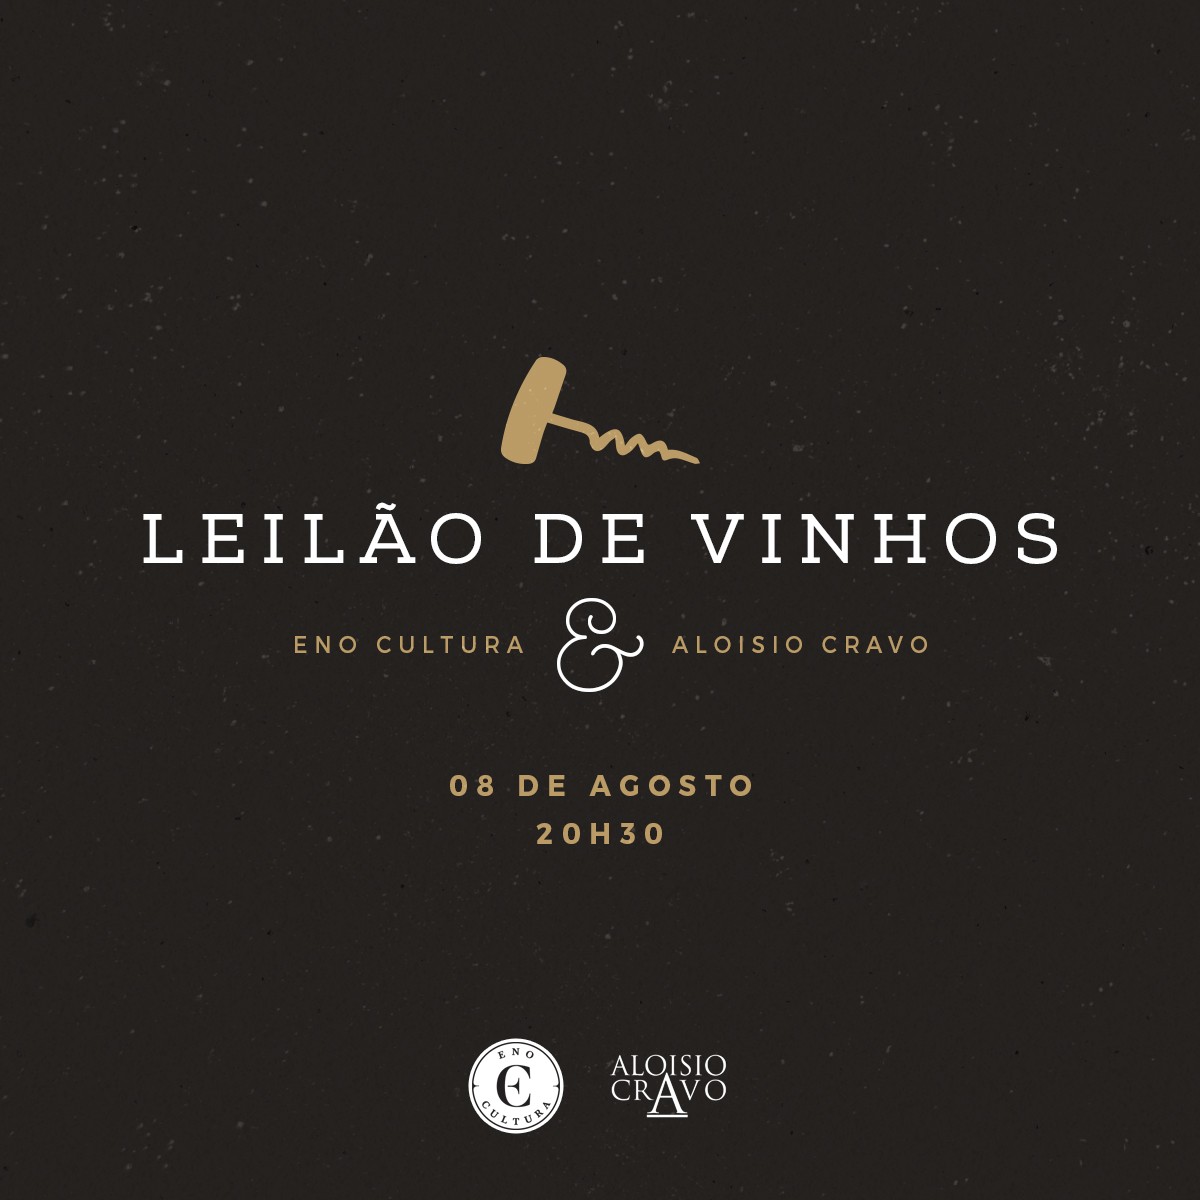 Thumbnail do artigo A Eno Cultura em parceria com o leiloeiro Aloisio Cravo promovem leilão de vinhos raros